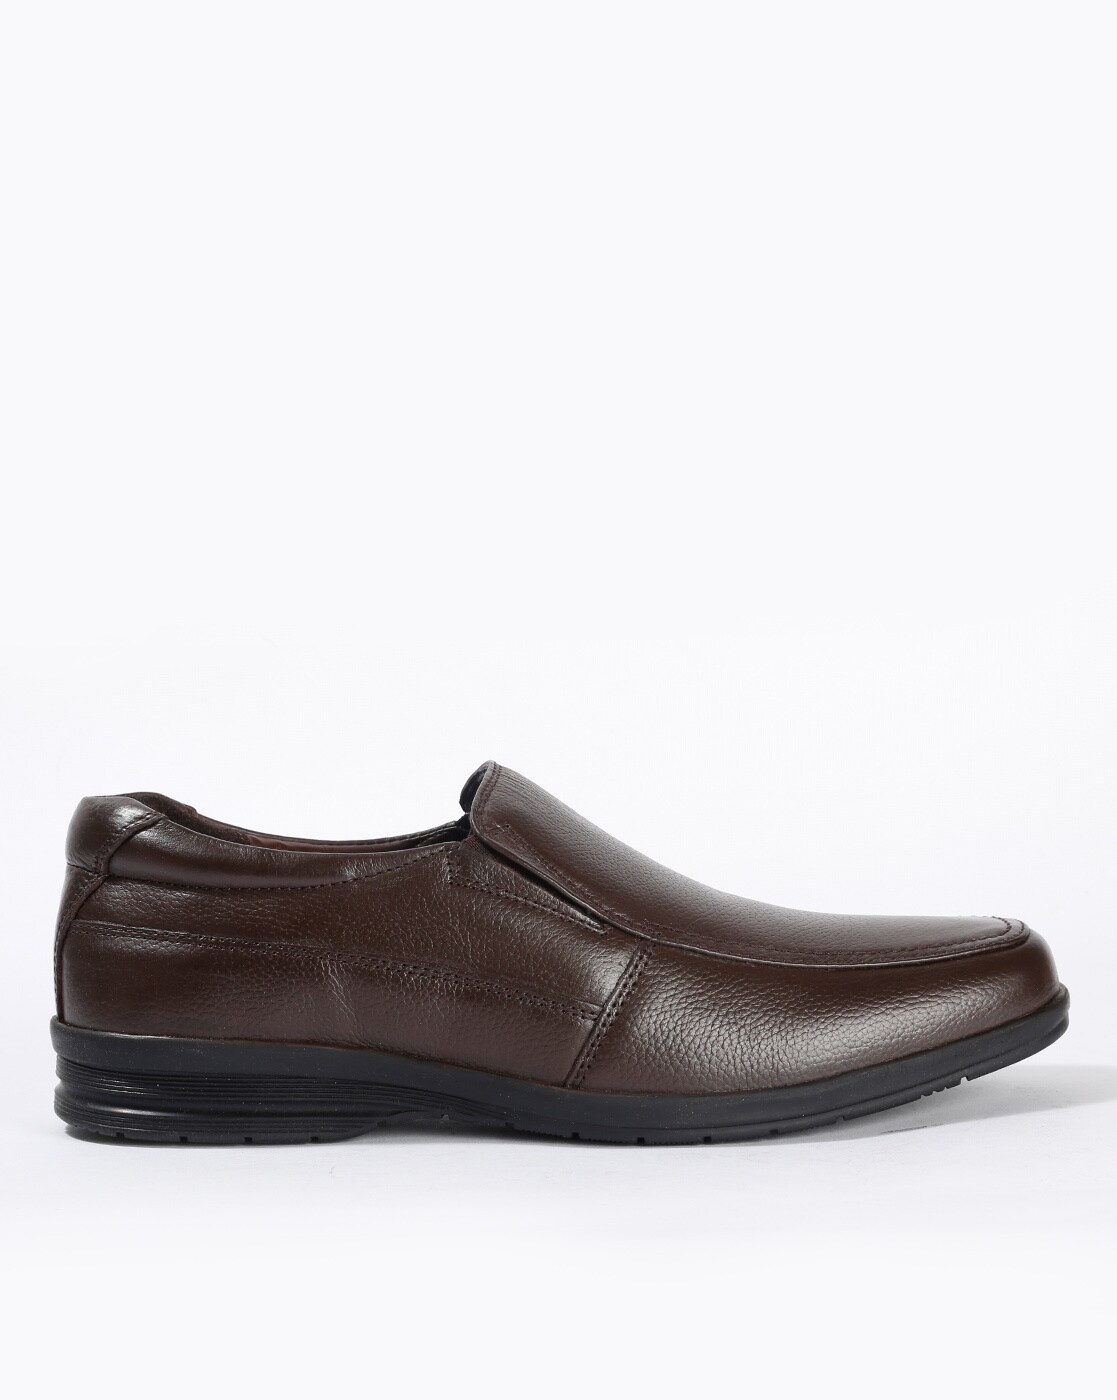 bata formal shoes online